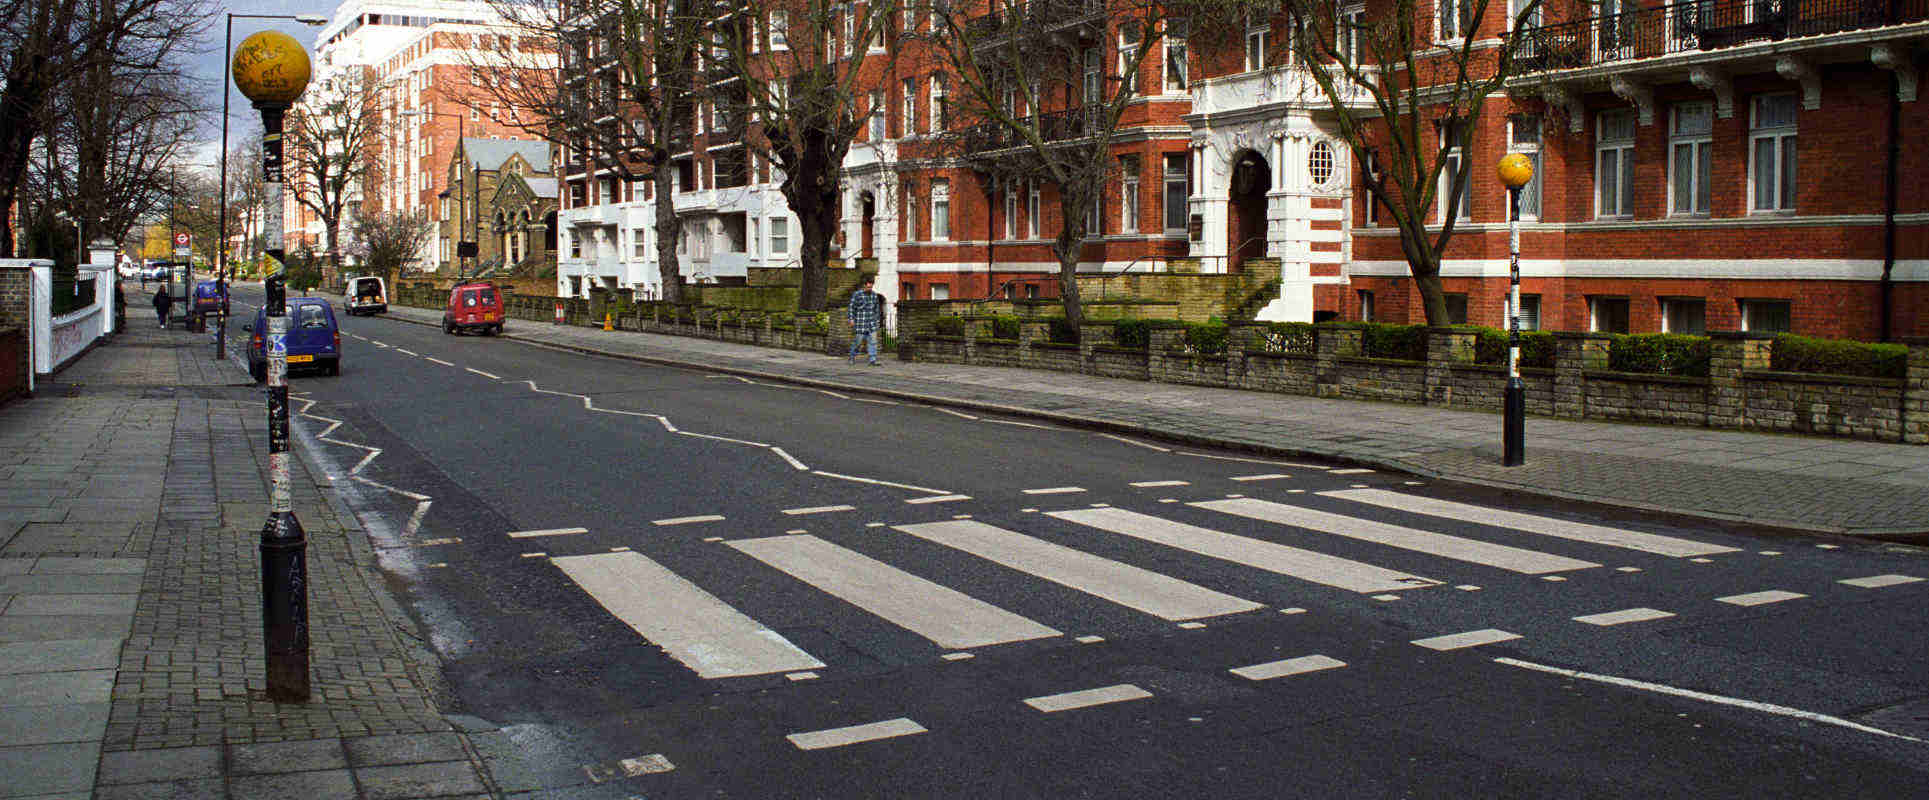 Abbey_Road_Crossing_London_Sander_Lamme